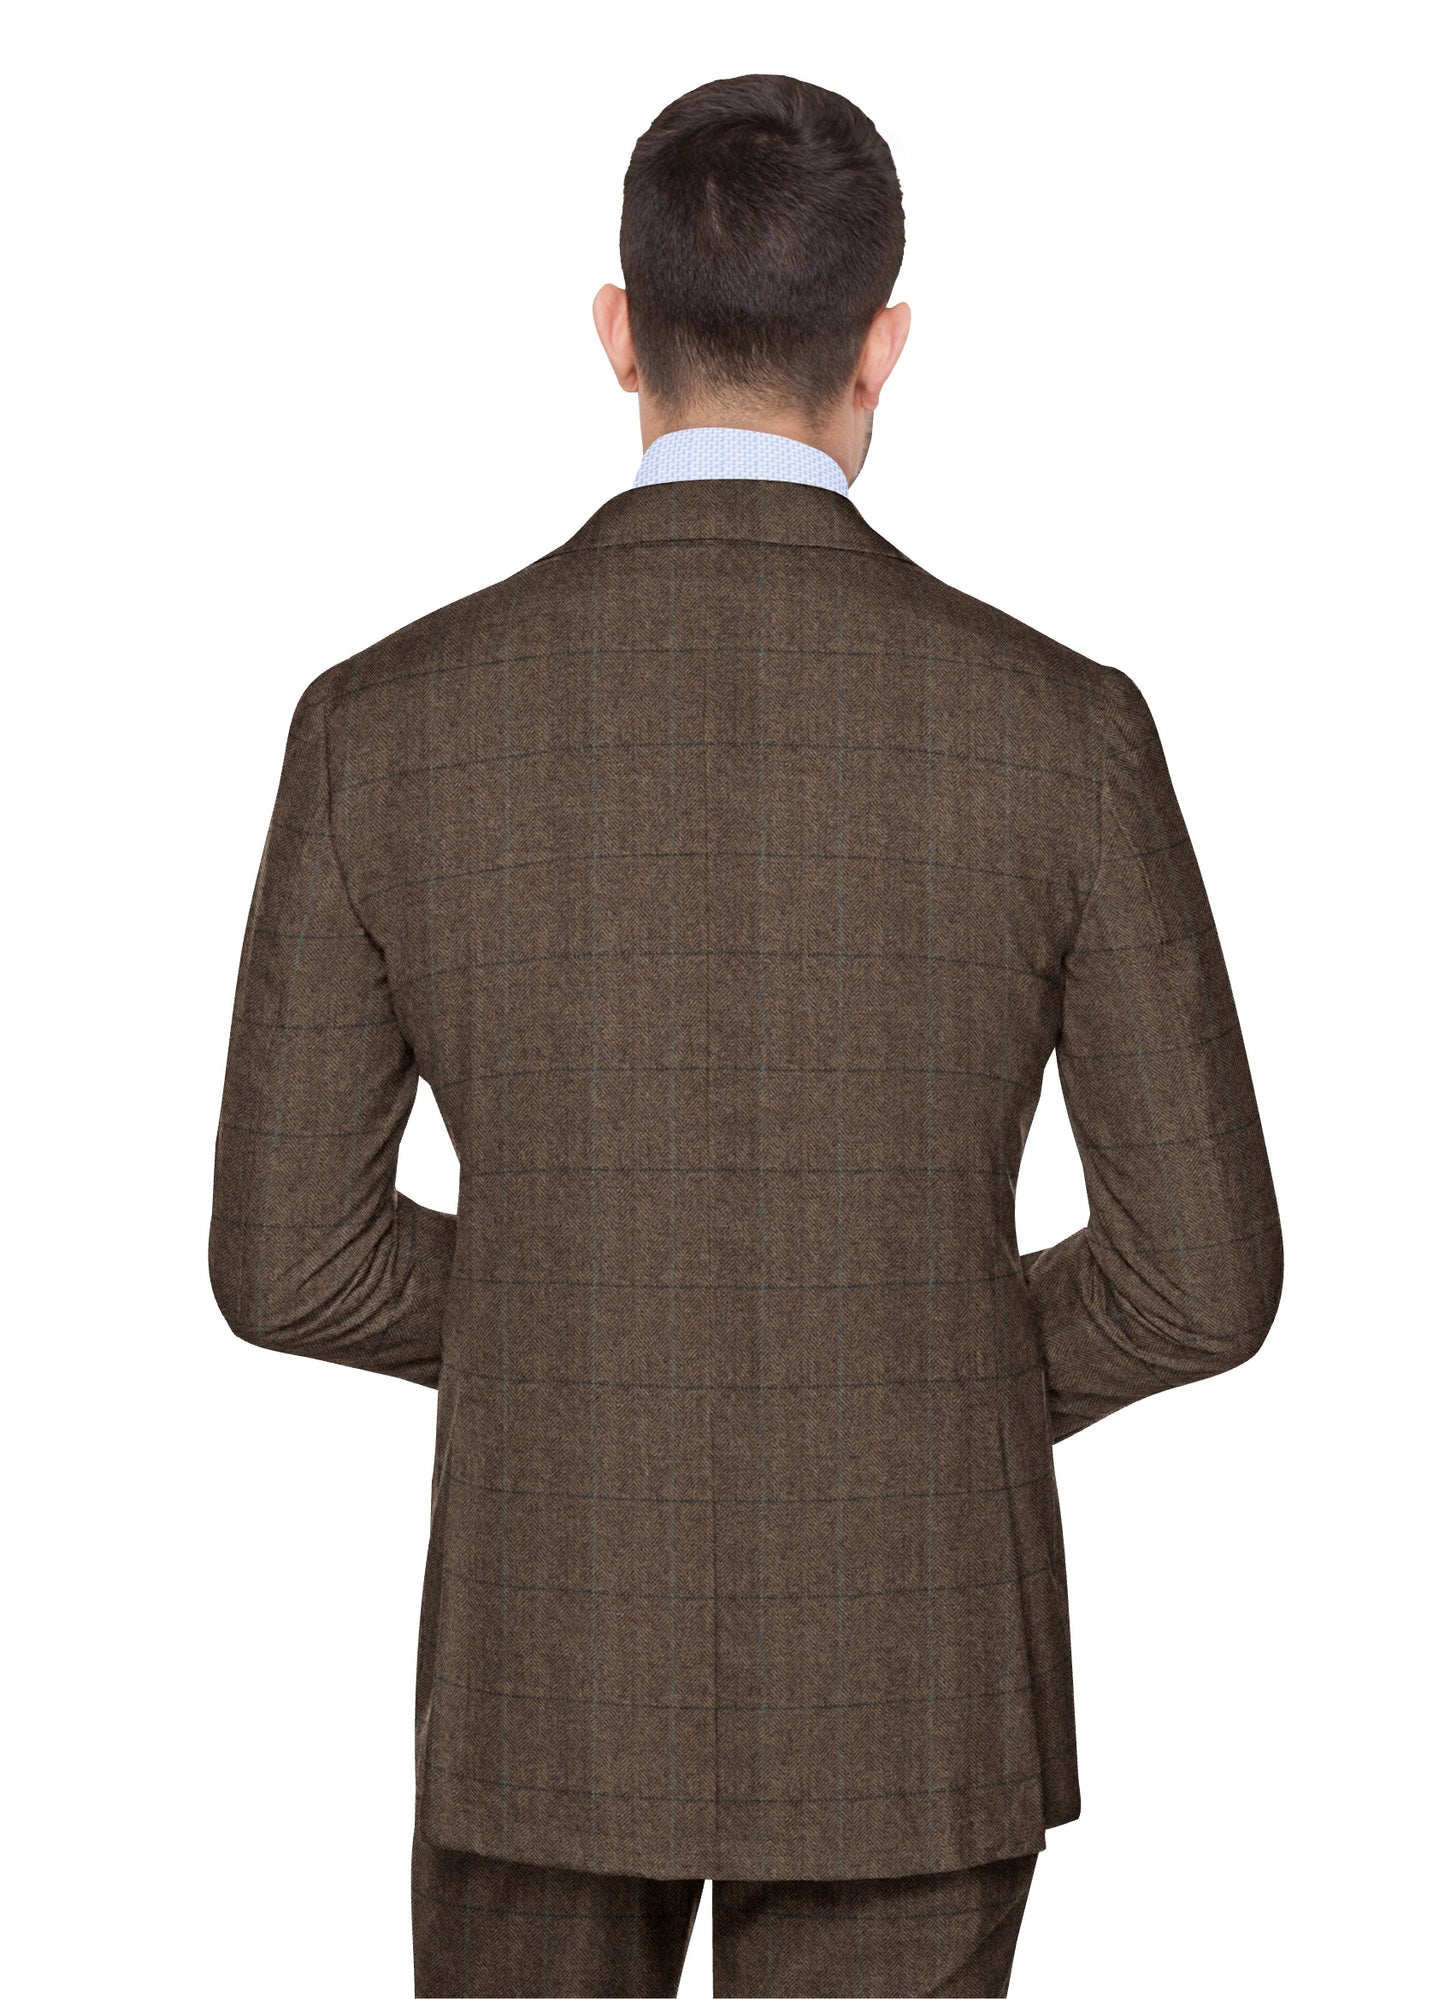 Oak Brown Herringbone Plaid Tweed Suit